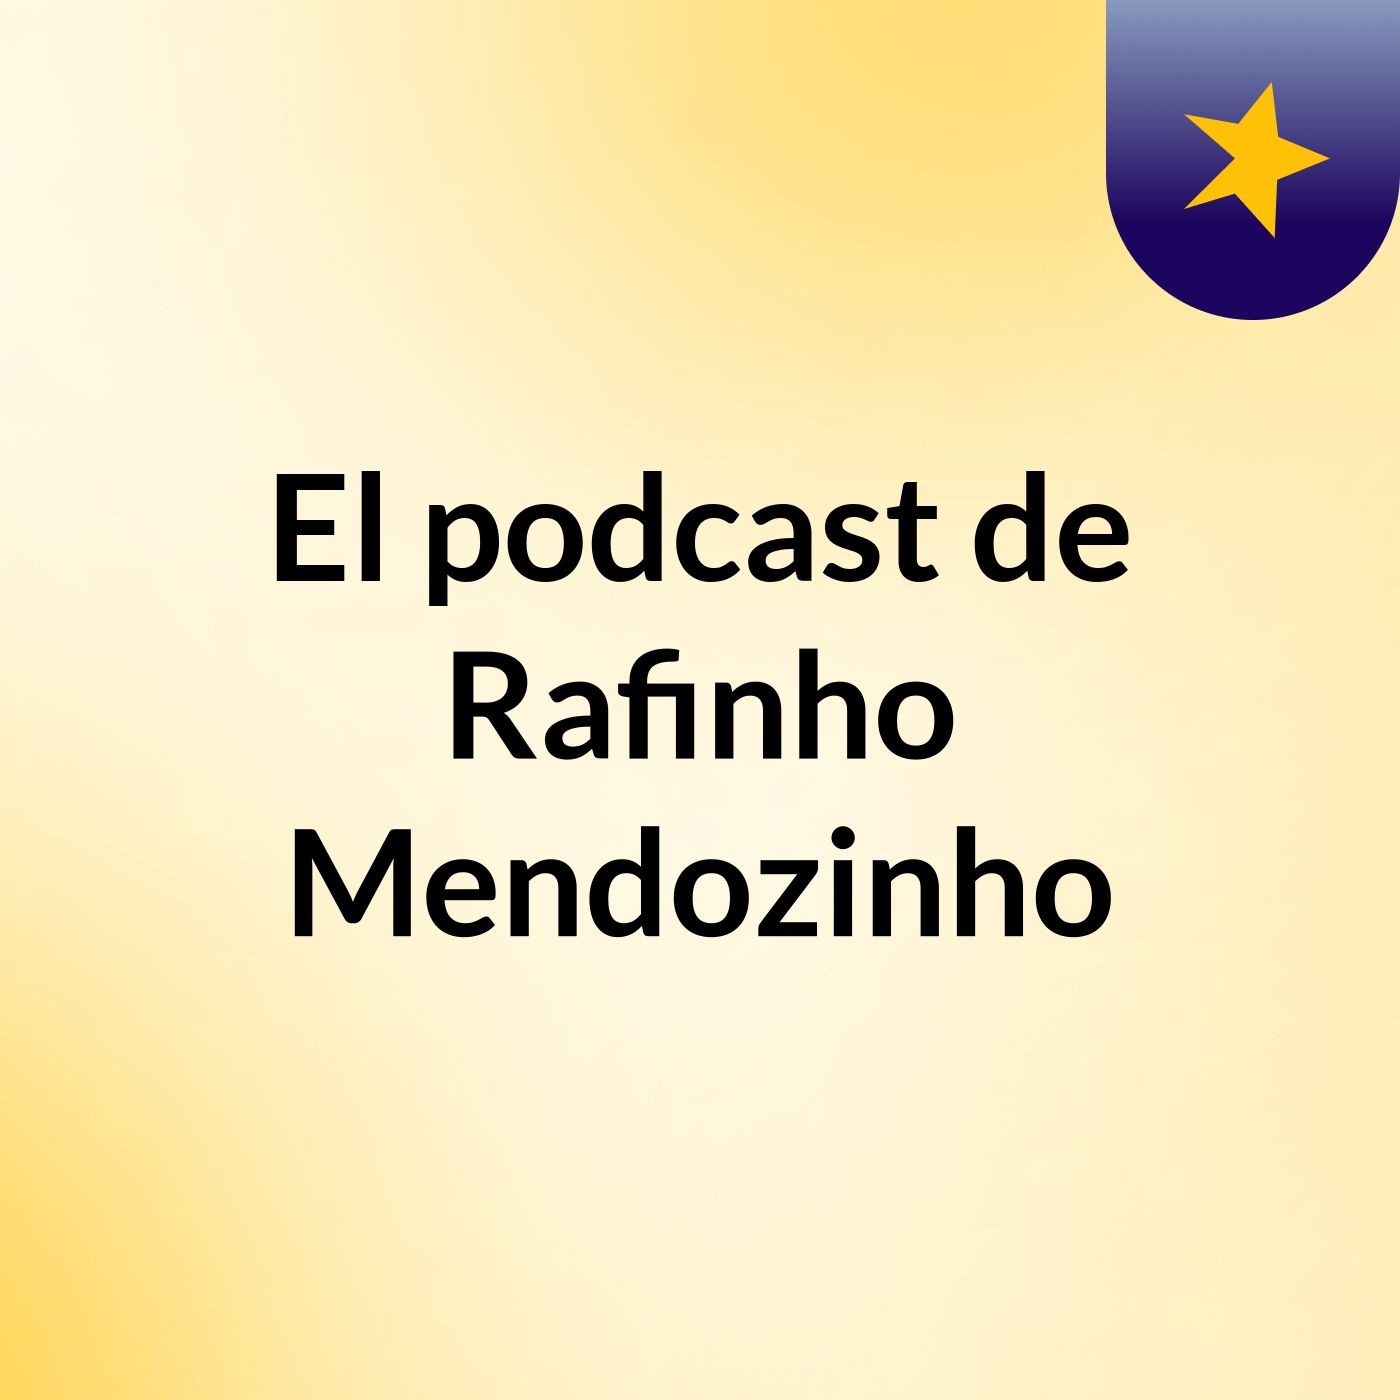 Episodio 3 - El podcast de Rafinho Mendozinho